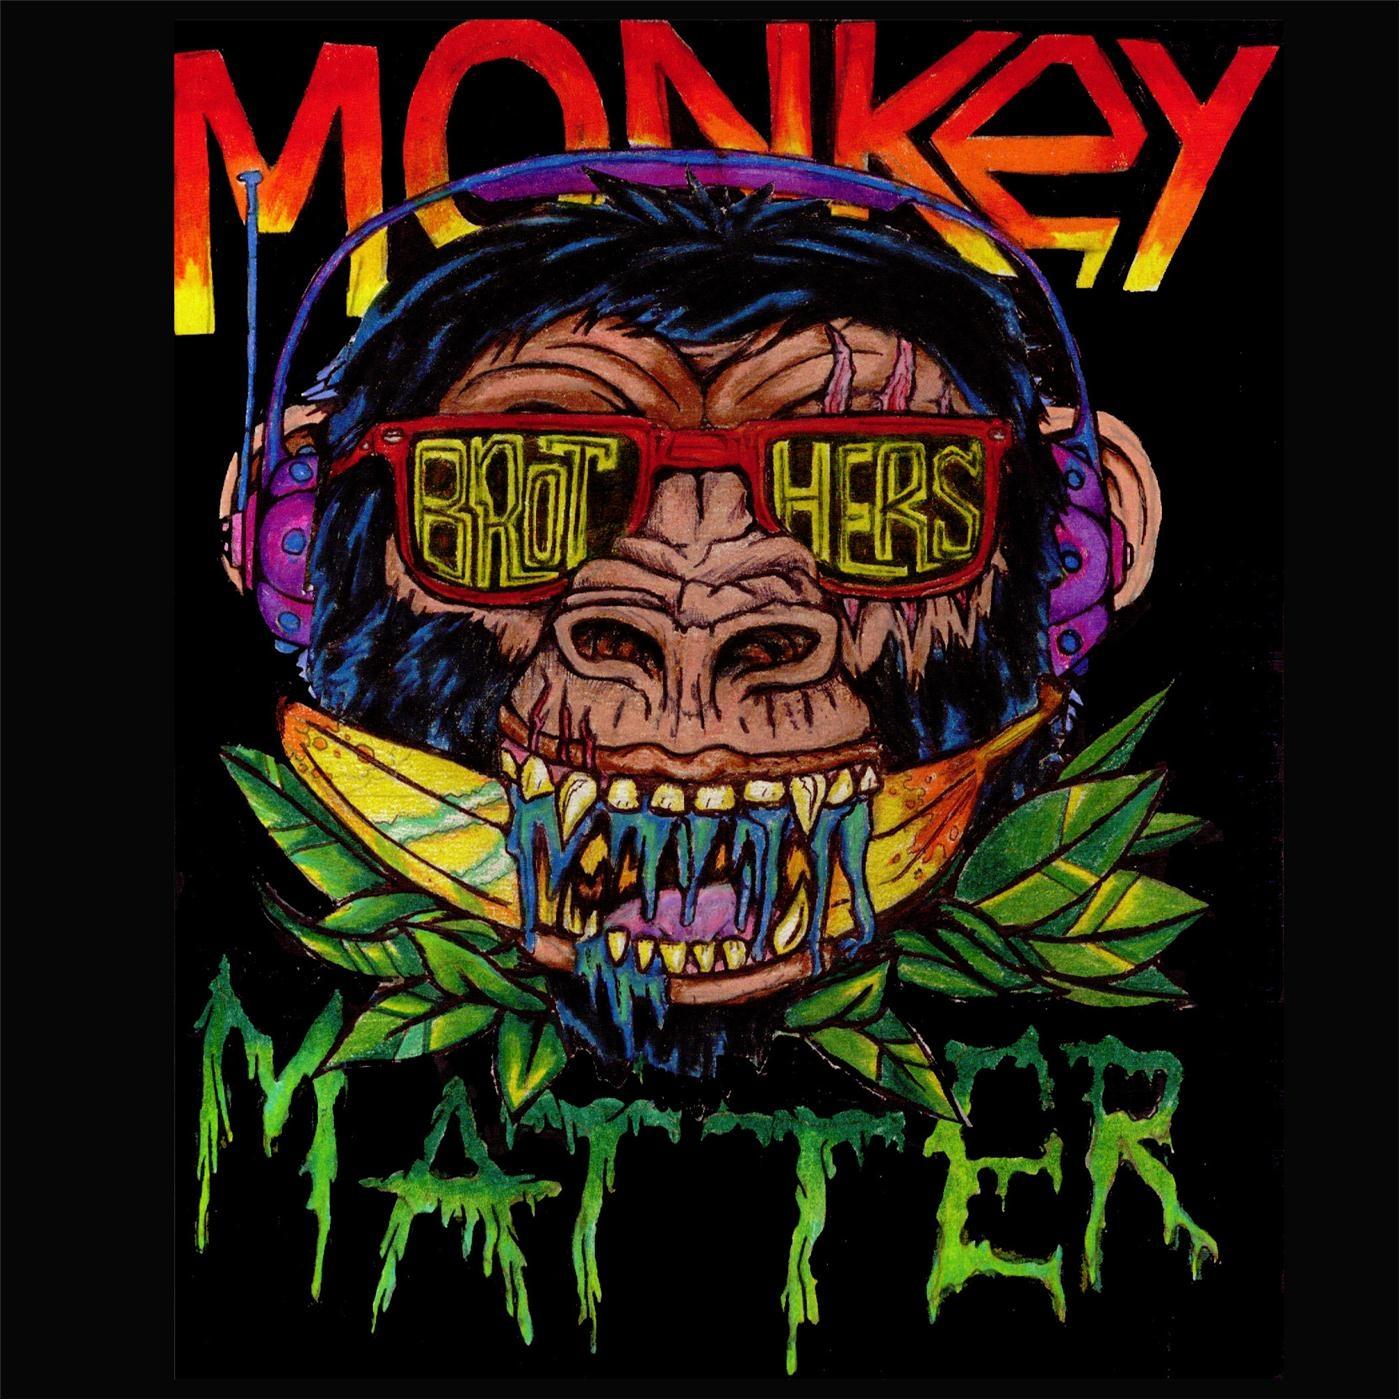 Monkey Matter